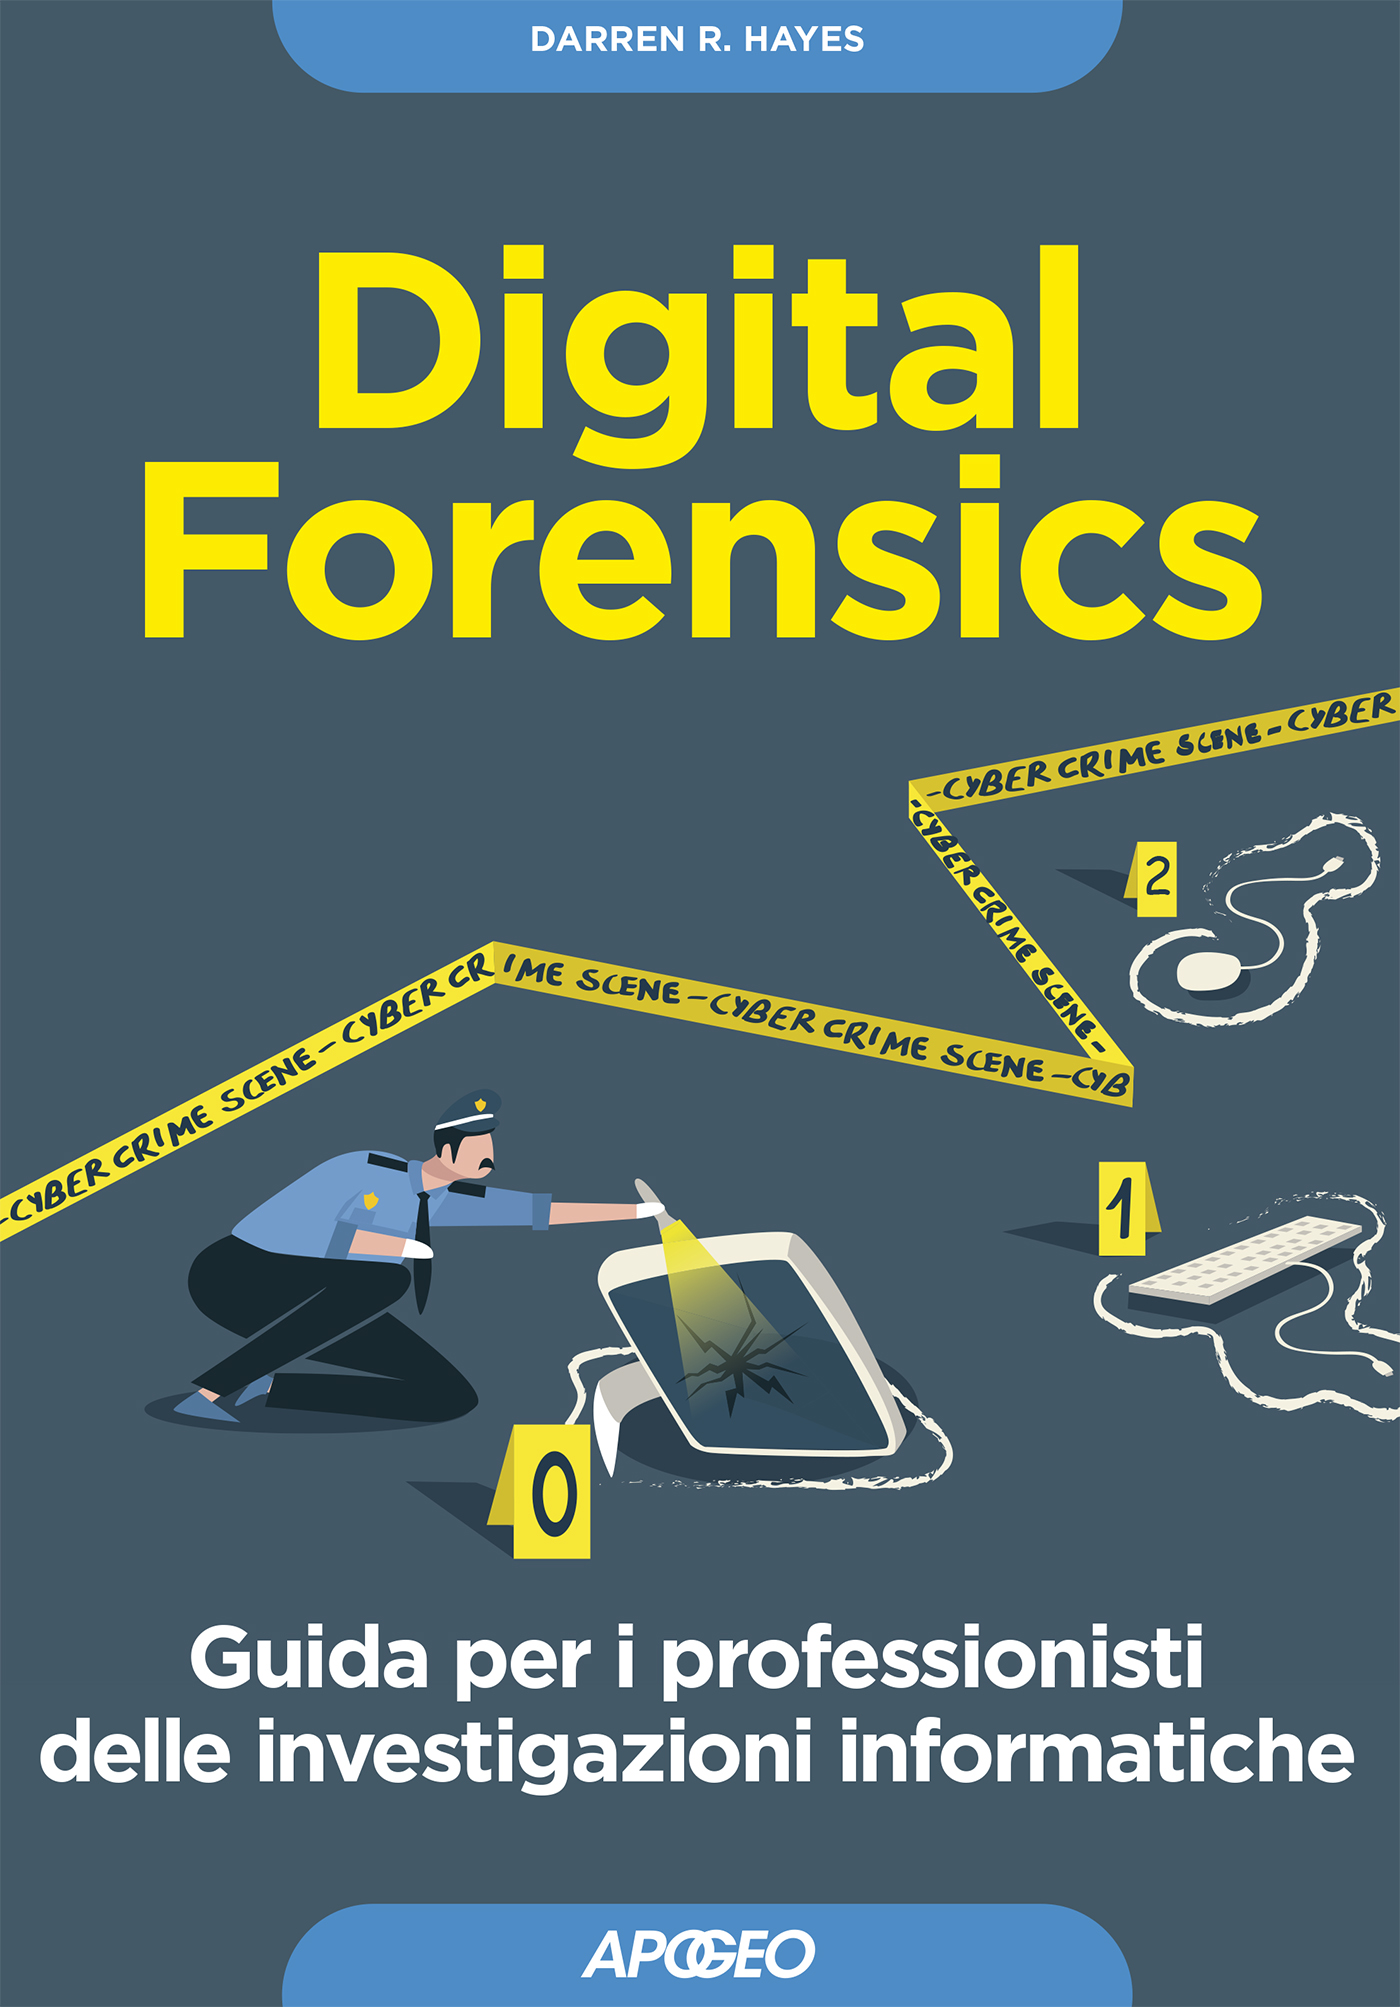 Digital Forensics - Guida per i professionisti delle investigazioni informatiche, di Darren R. Hayes